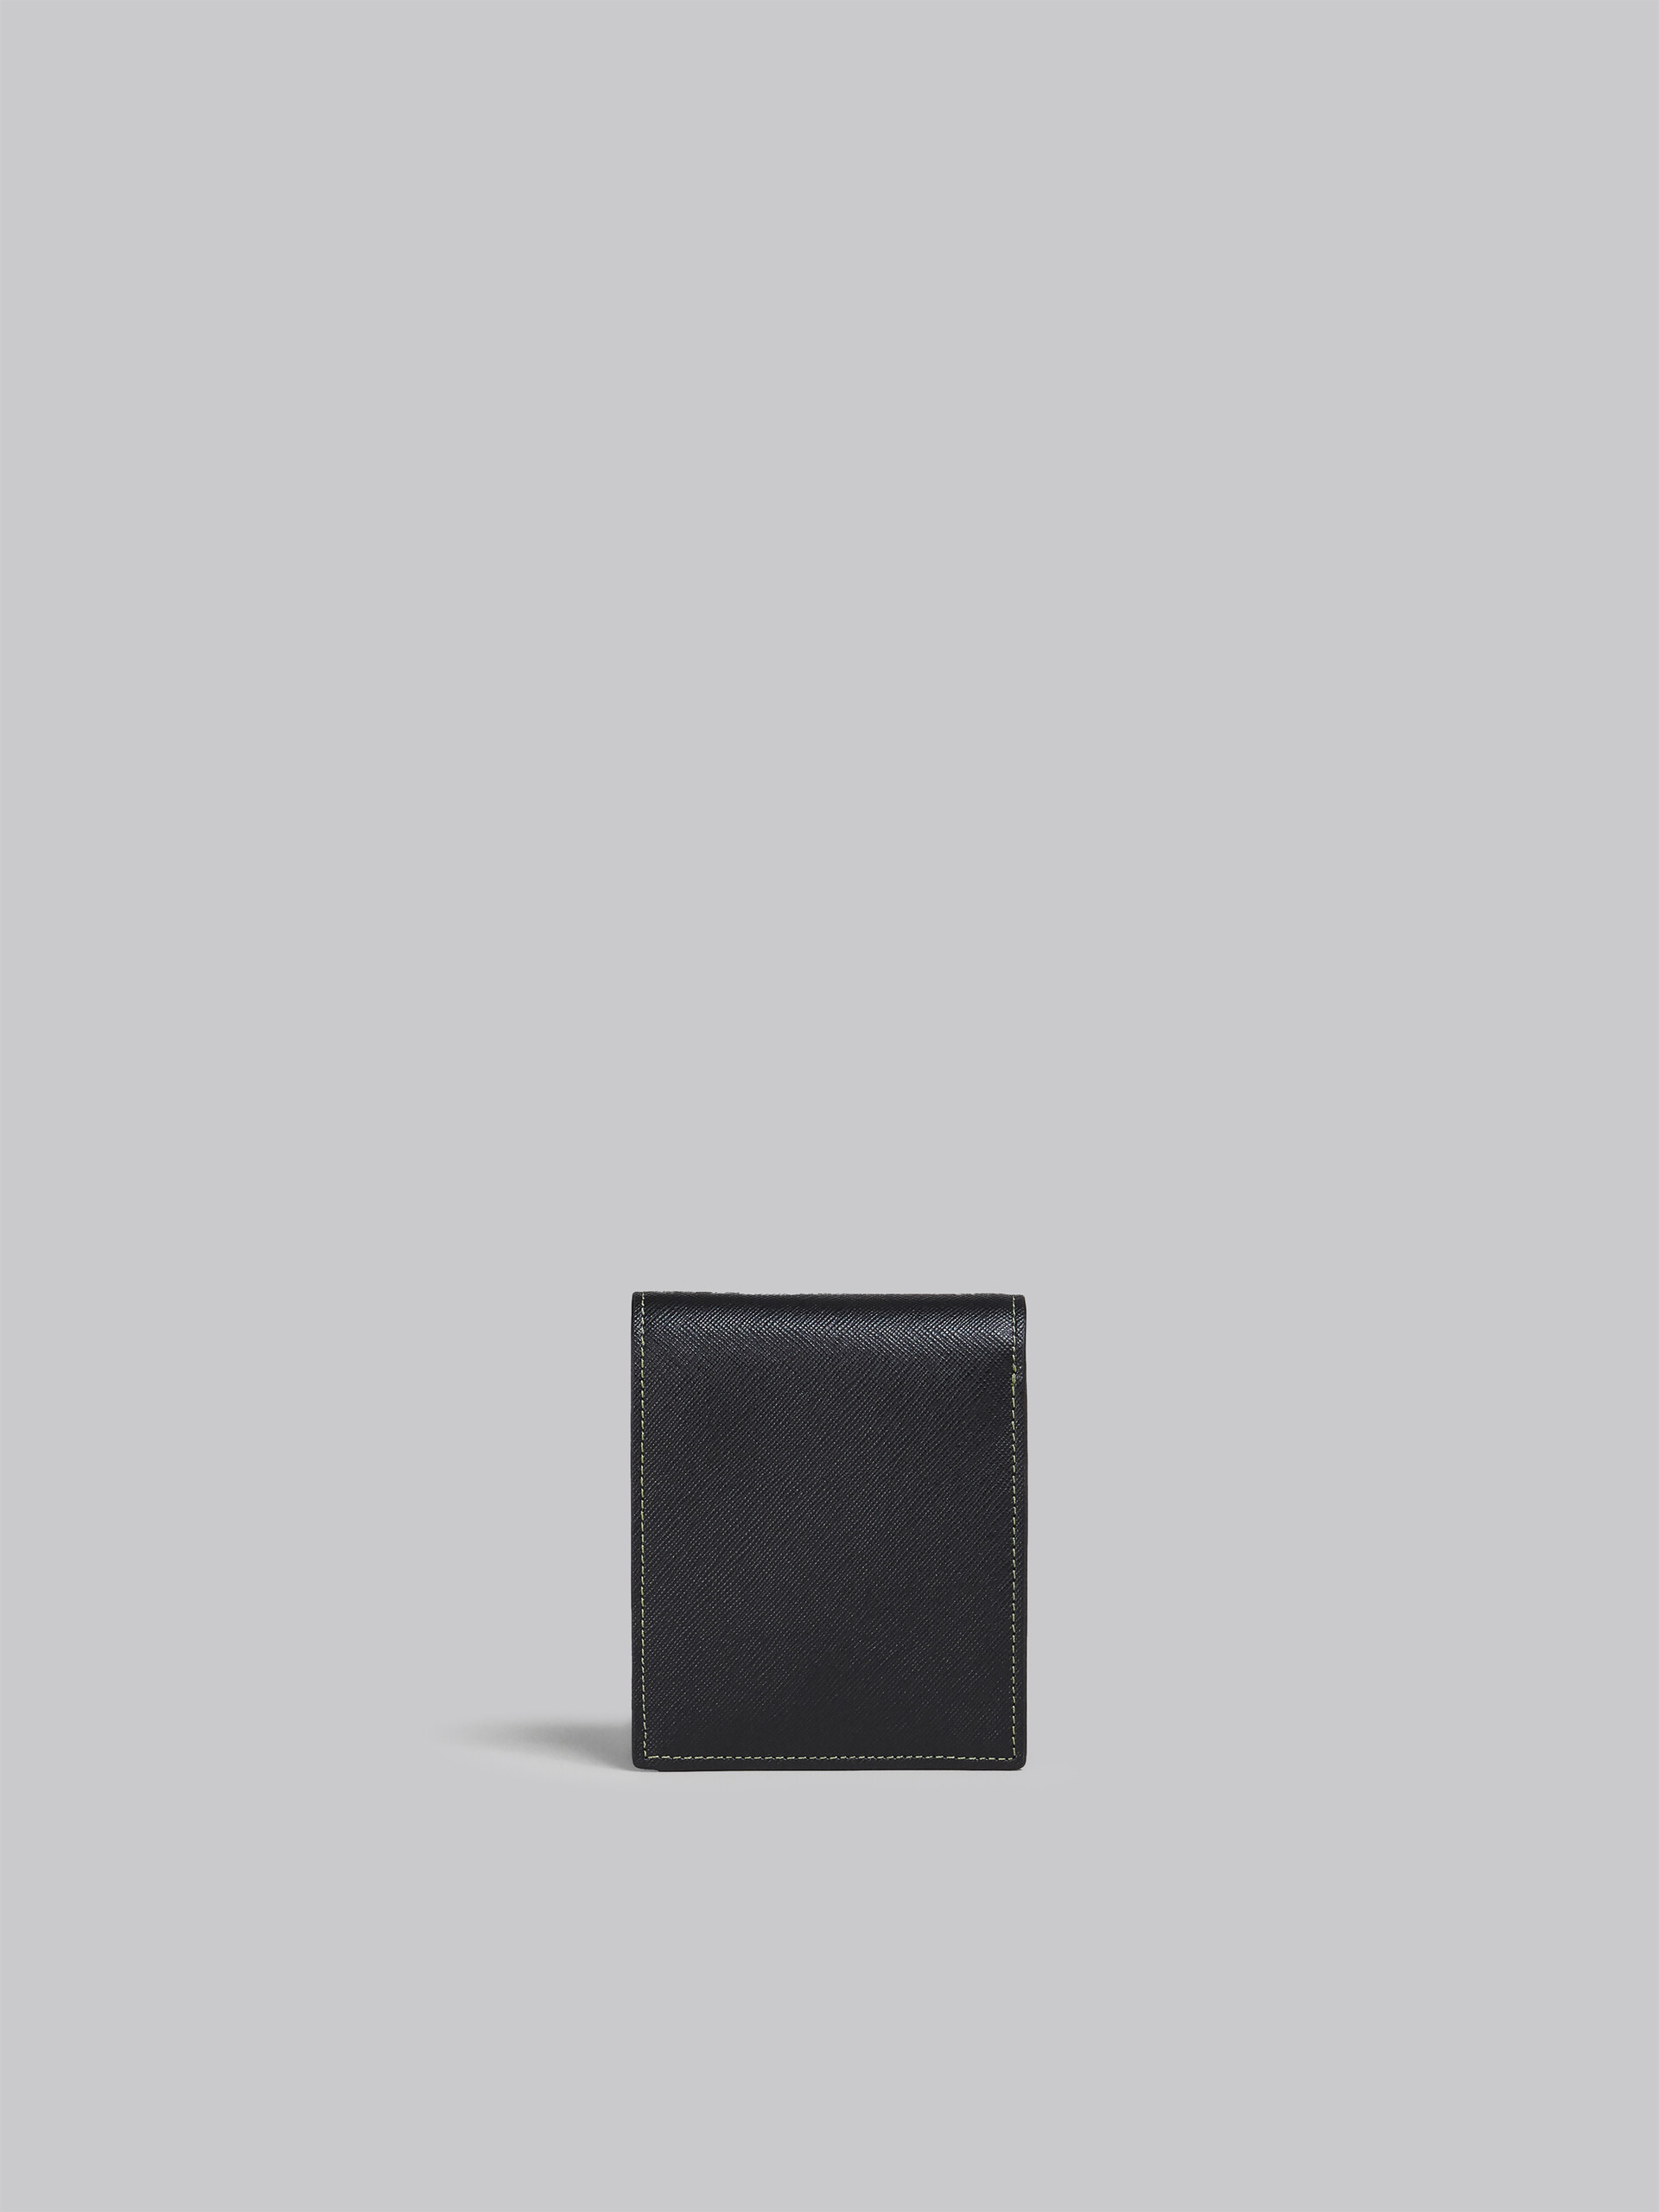 ブラック グリーン ブルー サフィアーノカーフレザー製二つ折り財布